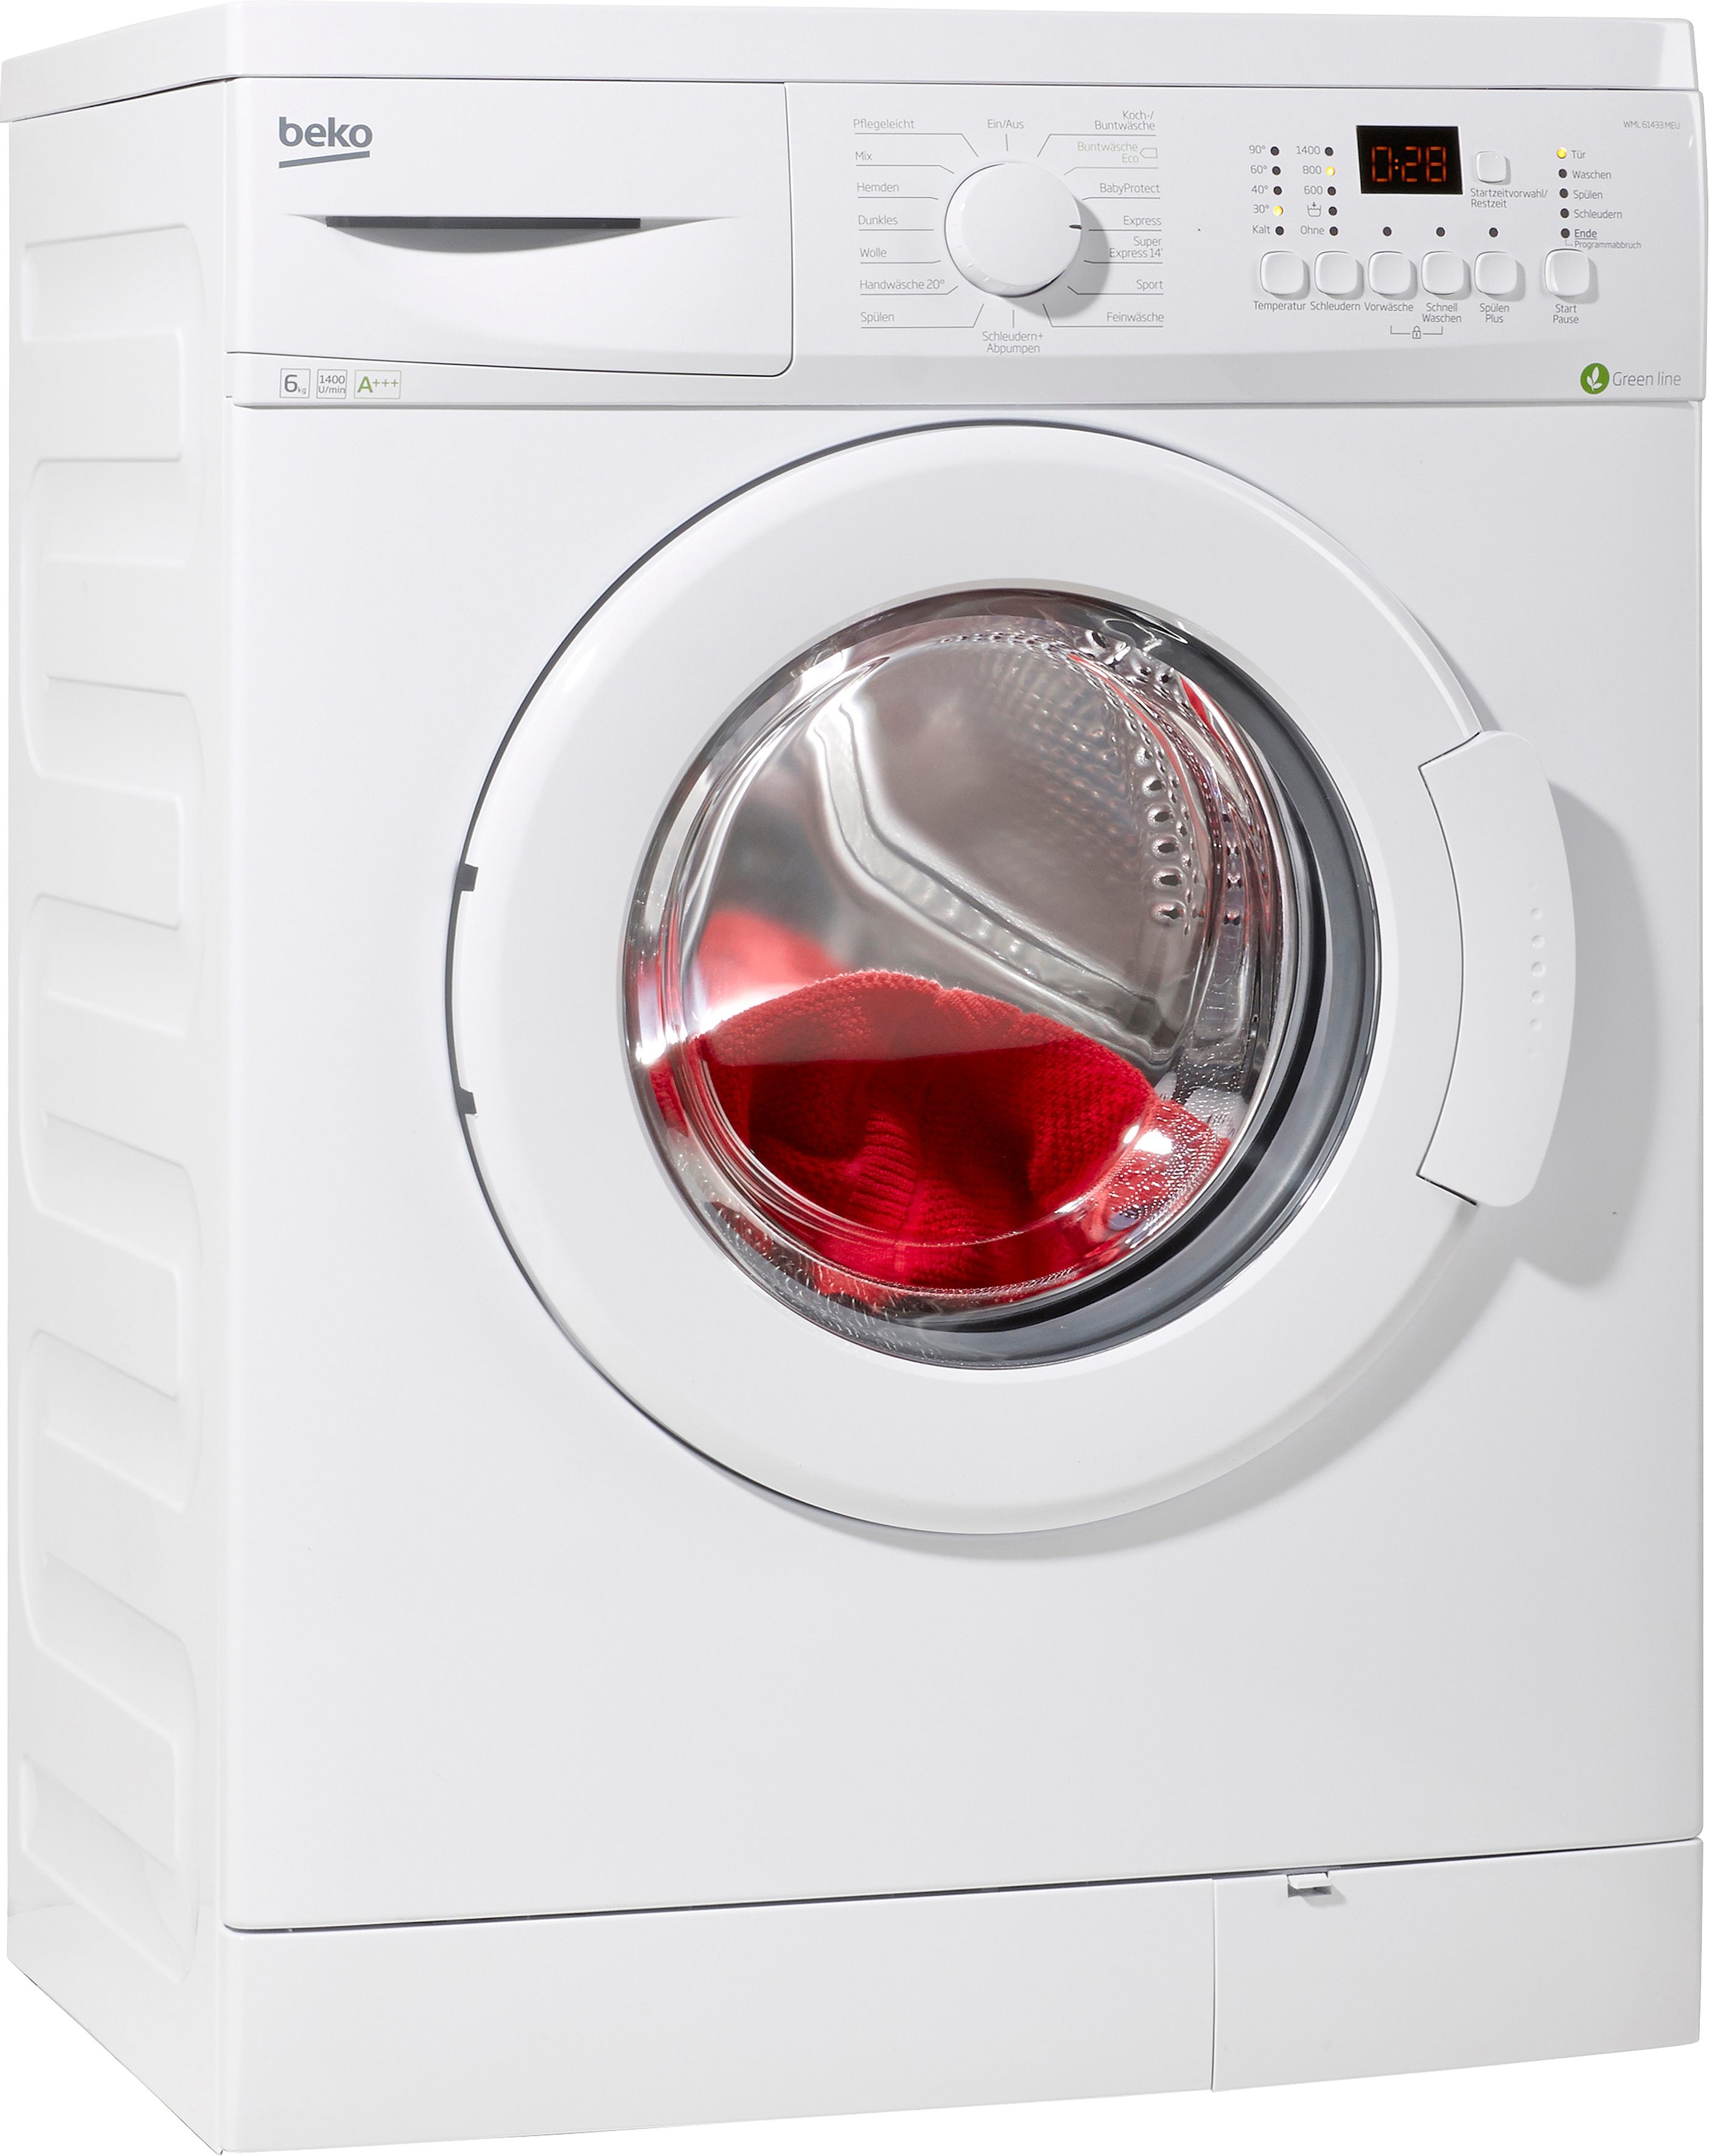 Welche Waschmaschine? [Archiv] - Seite 2 - 3DCenter Forum